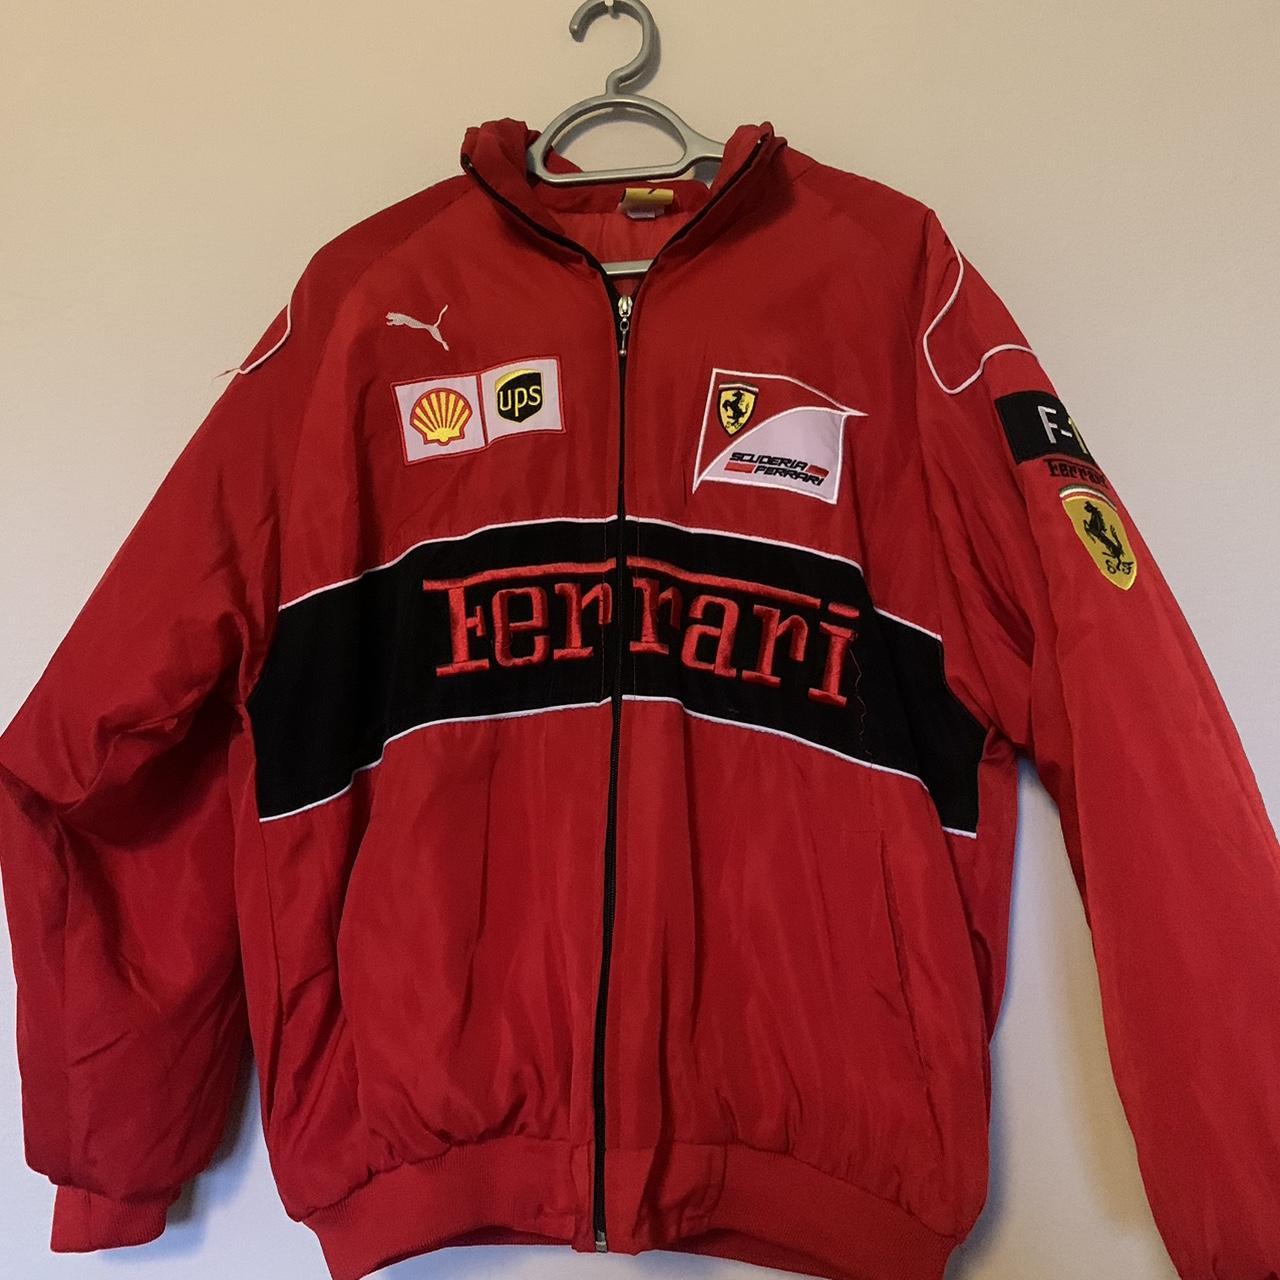 Super cute Ferrari jacket Bought from Etsy Slight... - Depop